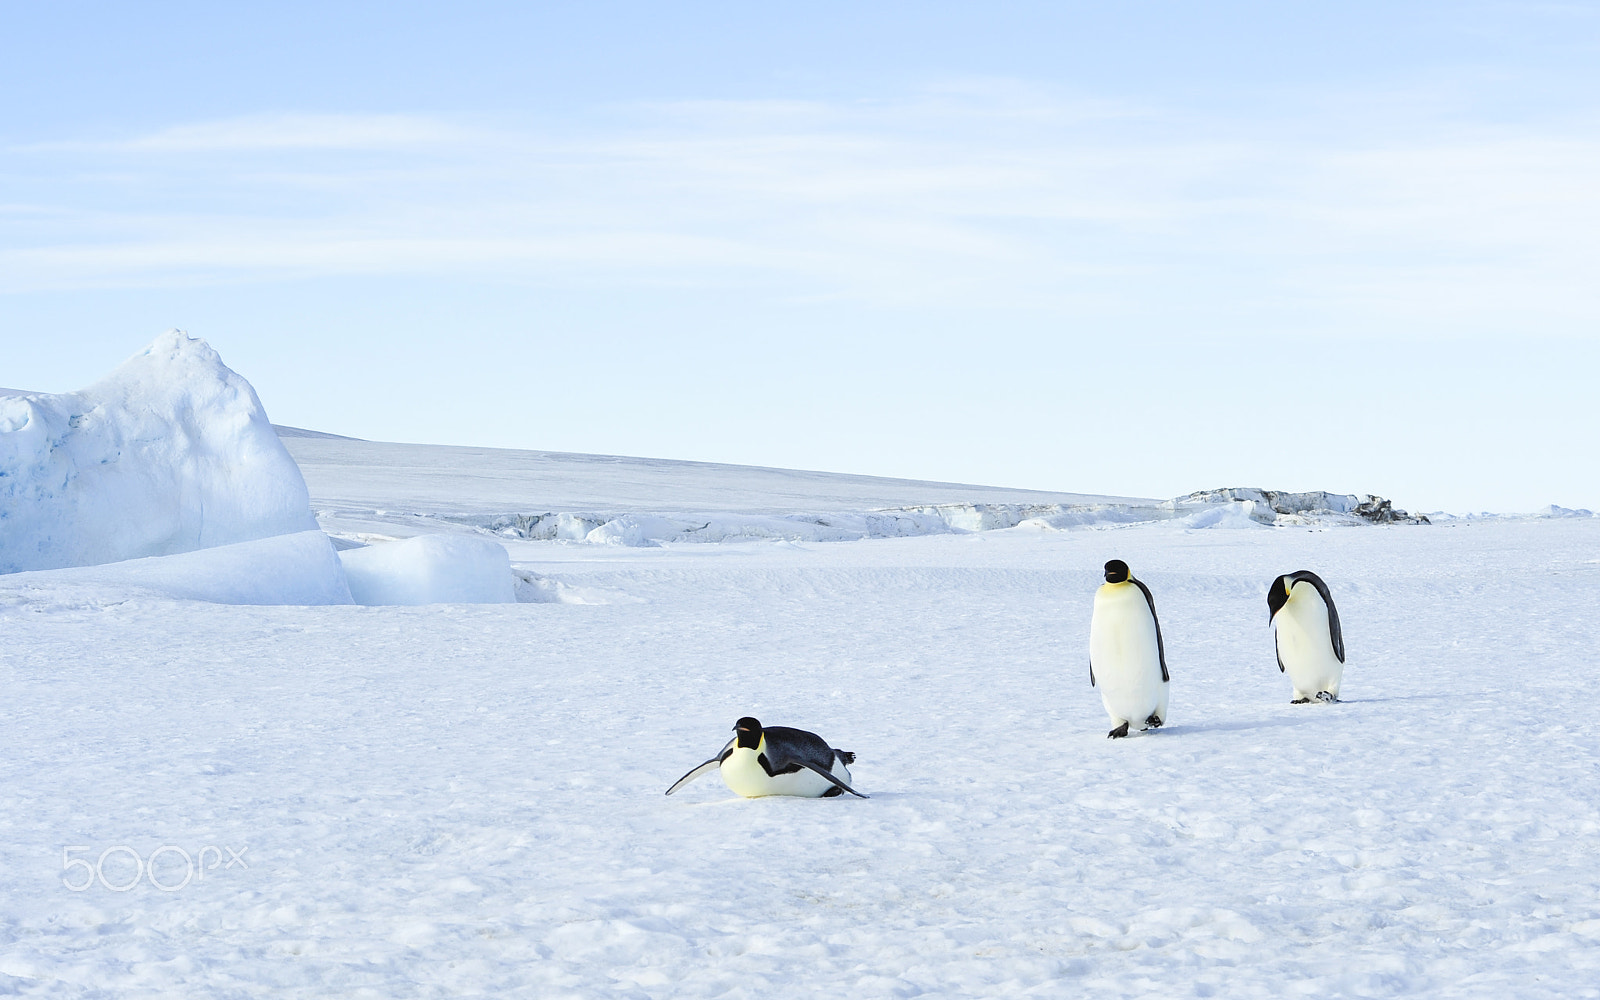 Nikon AF Nikkor 80-400mm F4.5-5.6D ED VR sample photo. Three emperor penguins on the snow photography